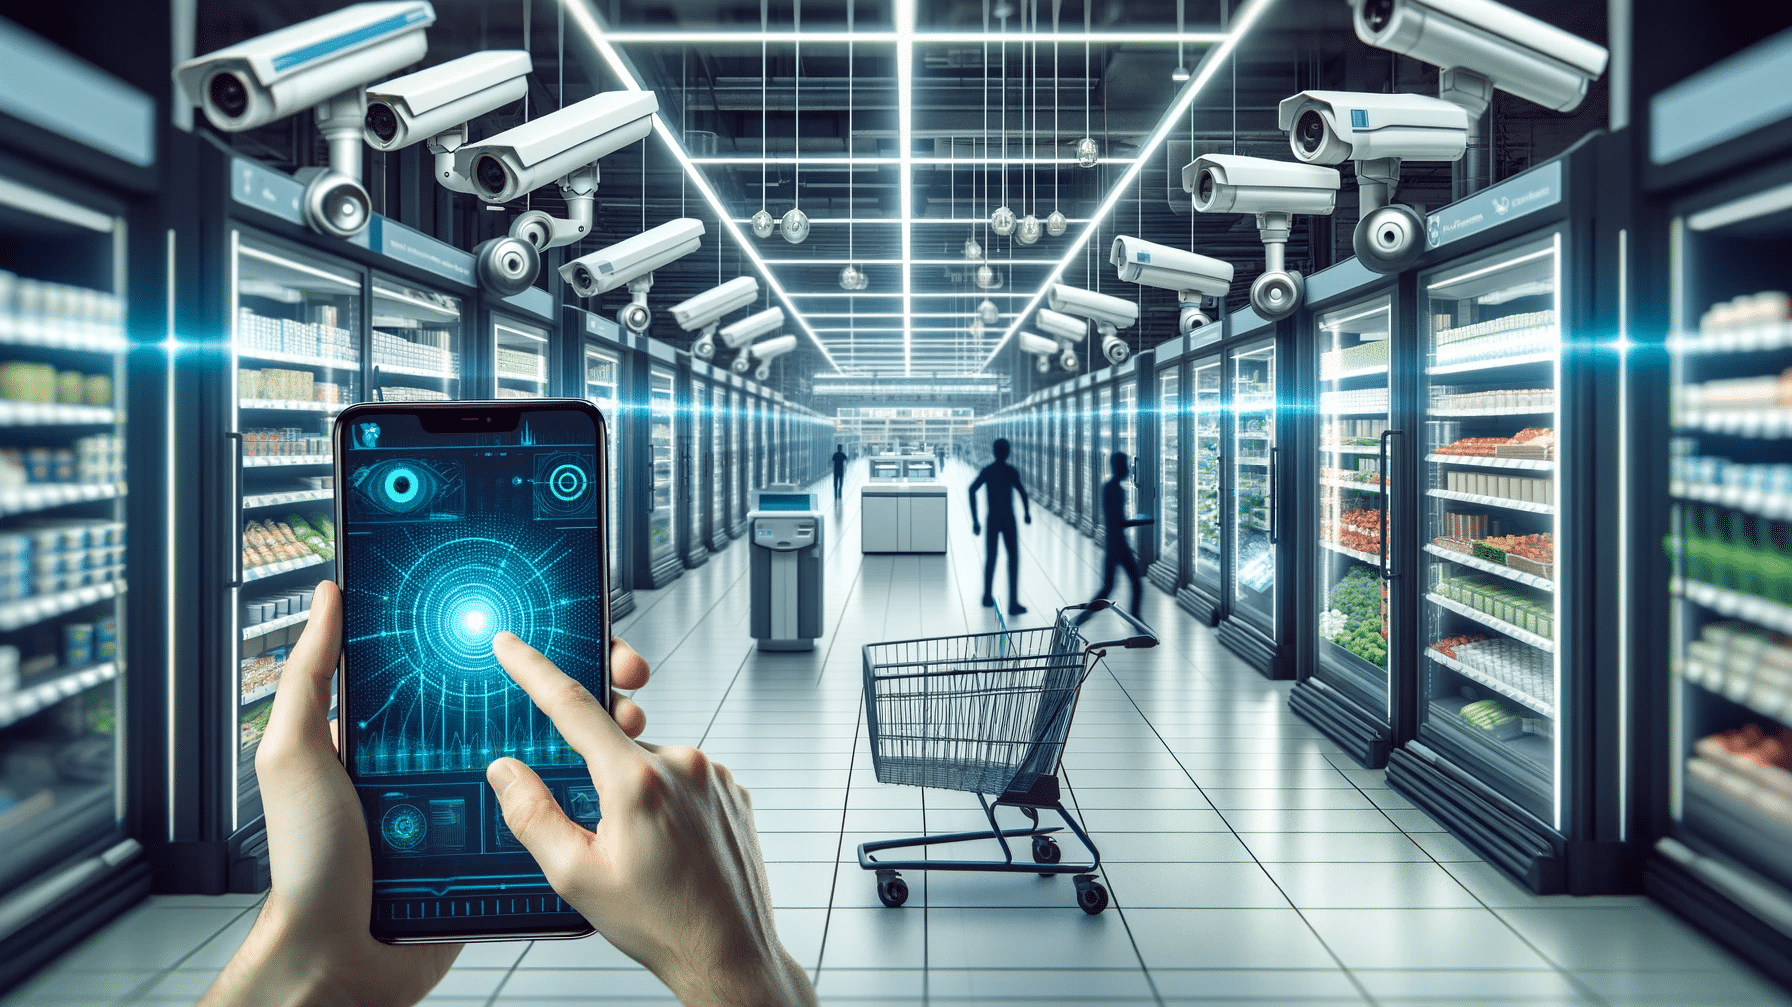 Futuristischer Supermarkt mit KI-Technologie und Datenschutzbedenken